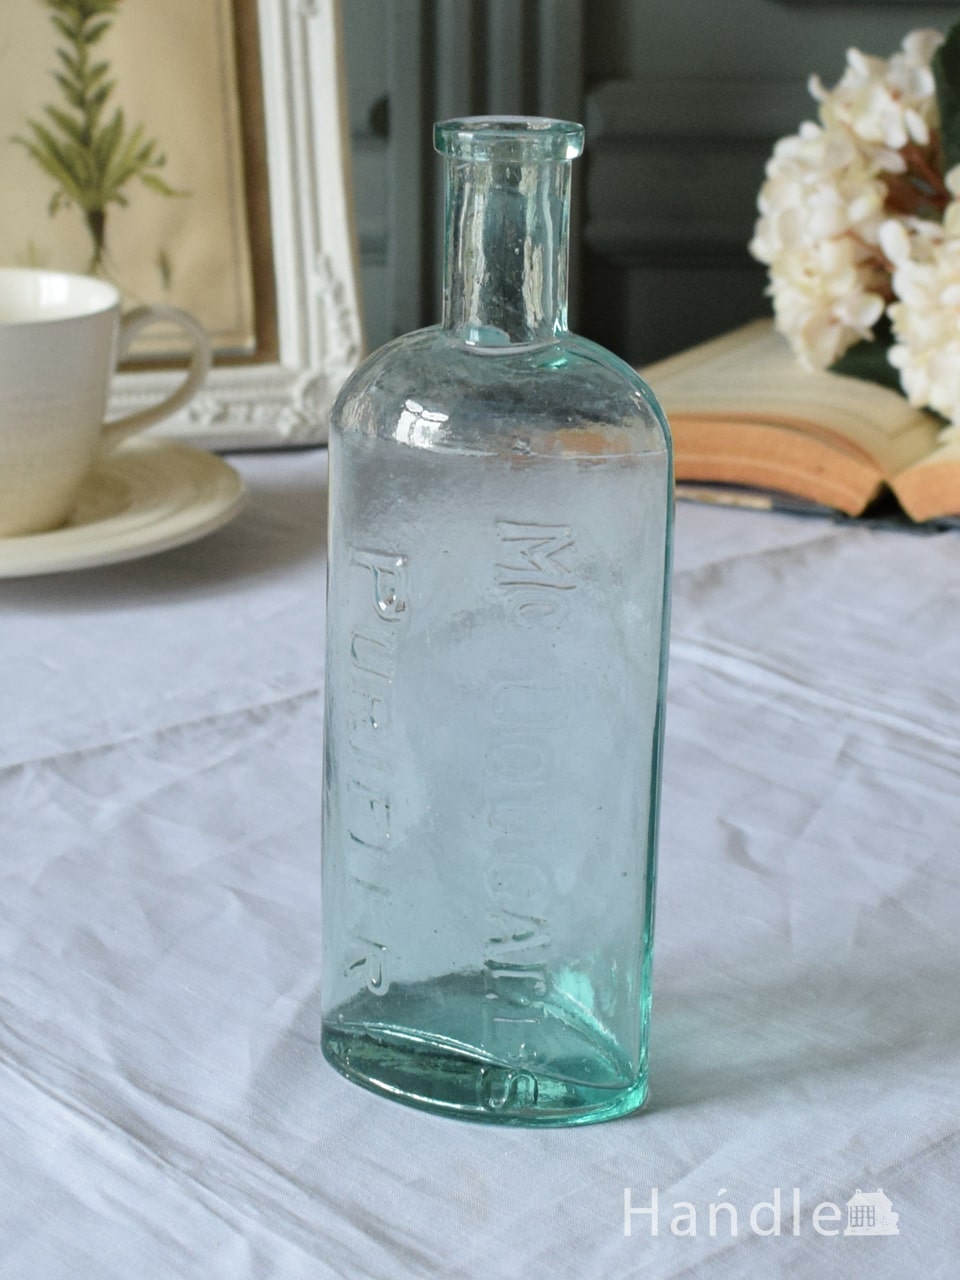 イギリスのアンティークガラス雑貨、ヴィクトリアンインク瓶(m-7318-z